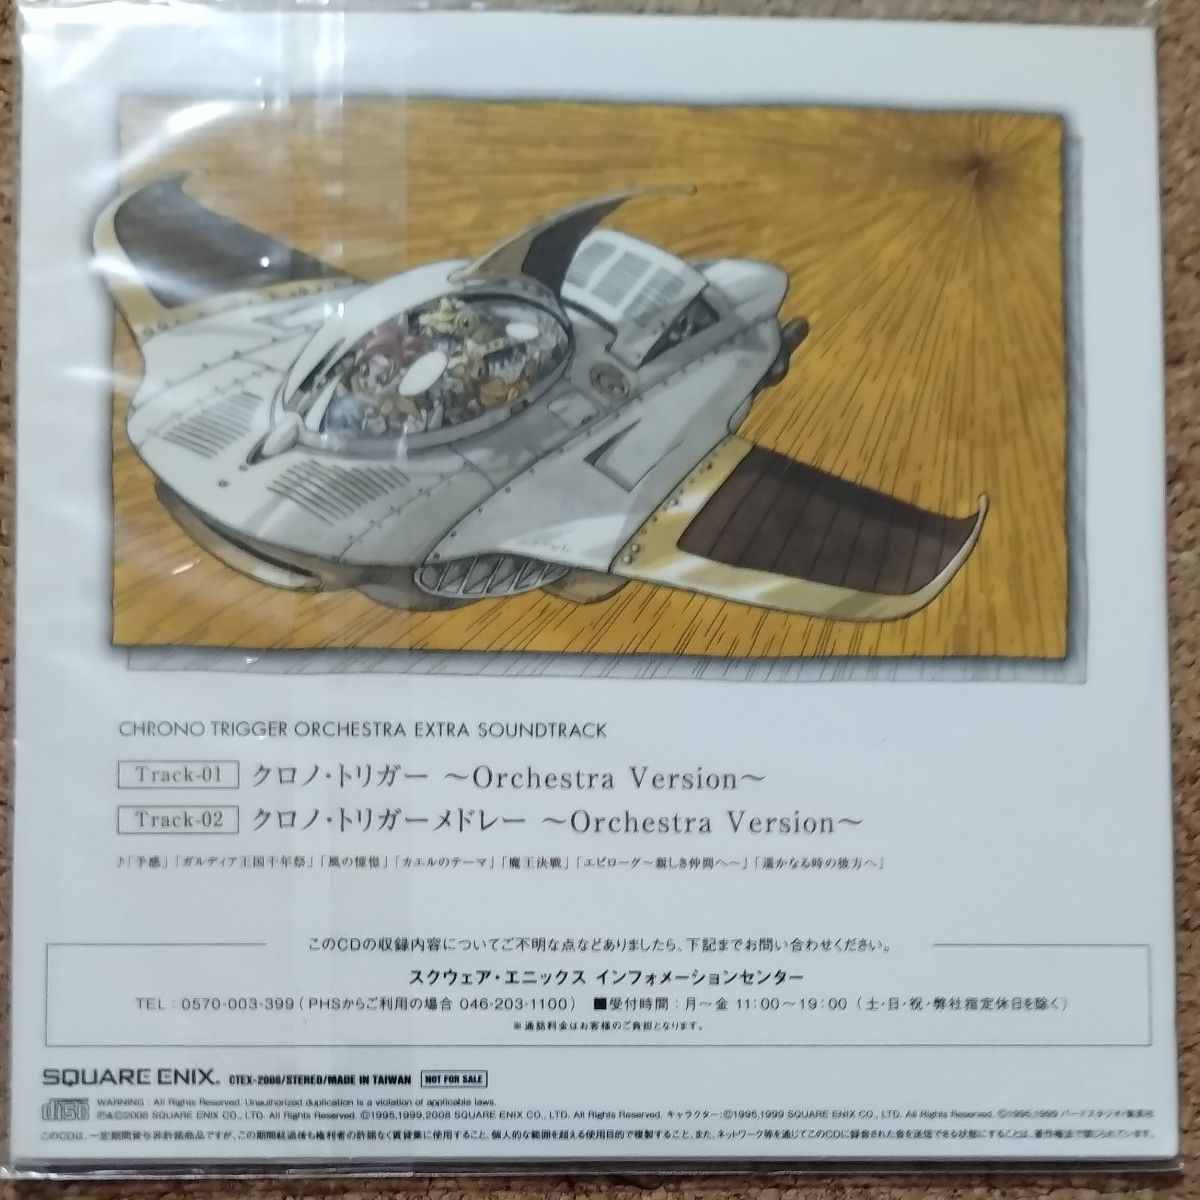 クロノトリガー オーケストラ EXTRA SOUNDTRACK サウンドトラック CD 光田康典  CHRONO TRIGGER